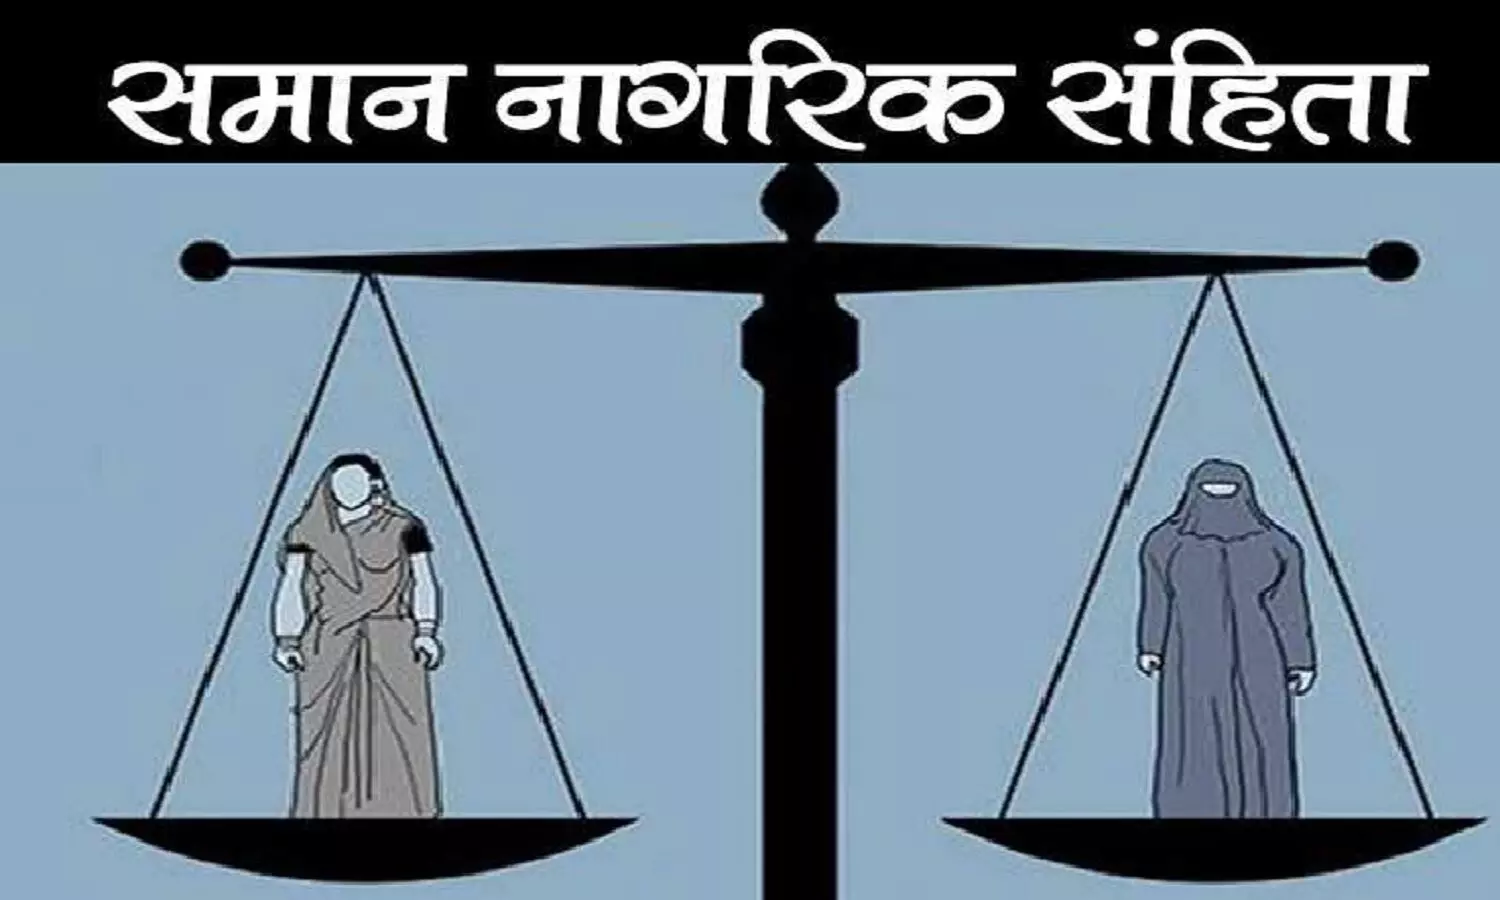 Uniform Civil Code In Hindi: समान नागरिक संहिता क्या है? आसान भषा में समझें